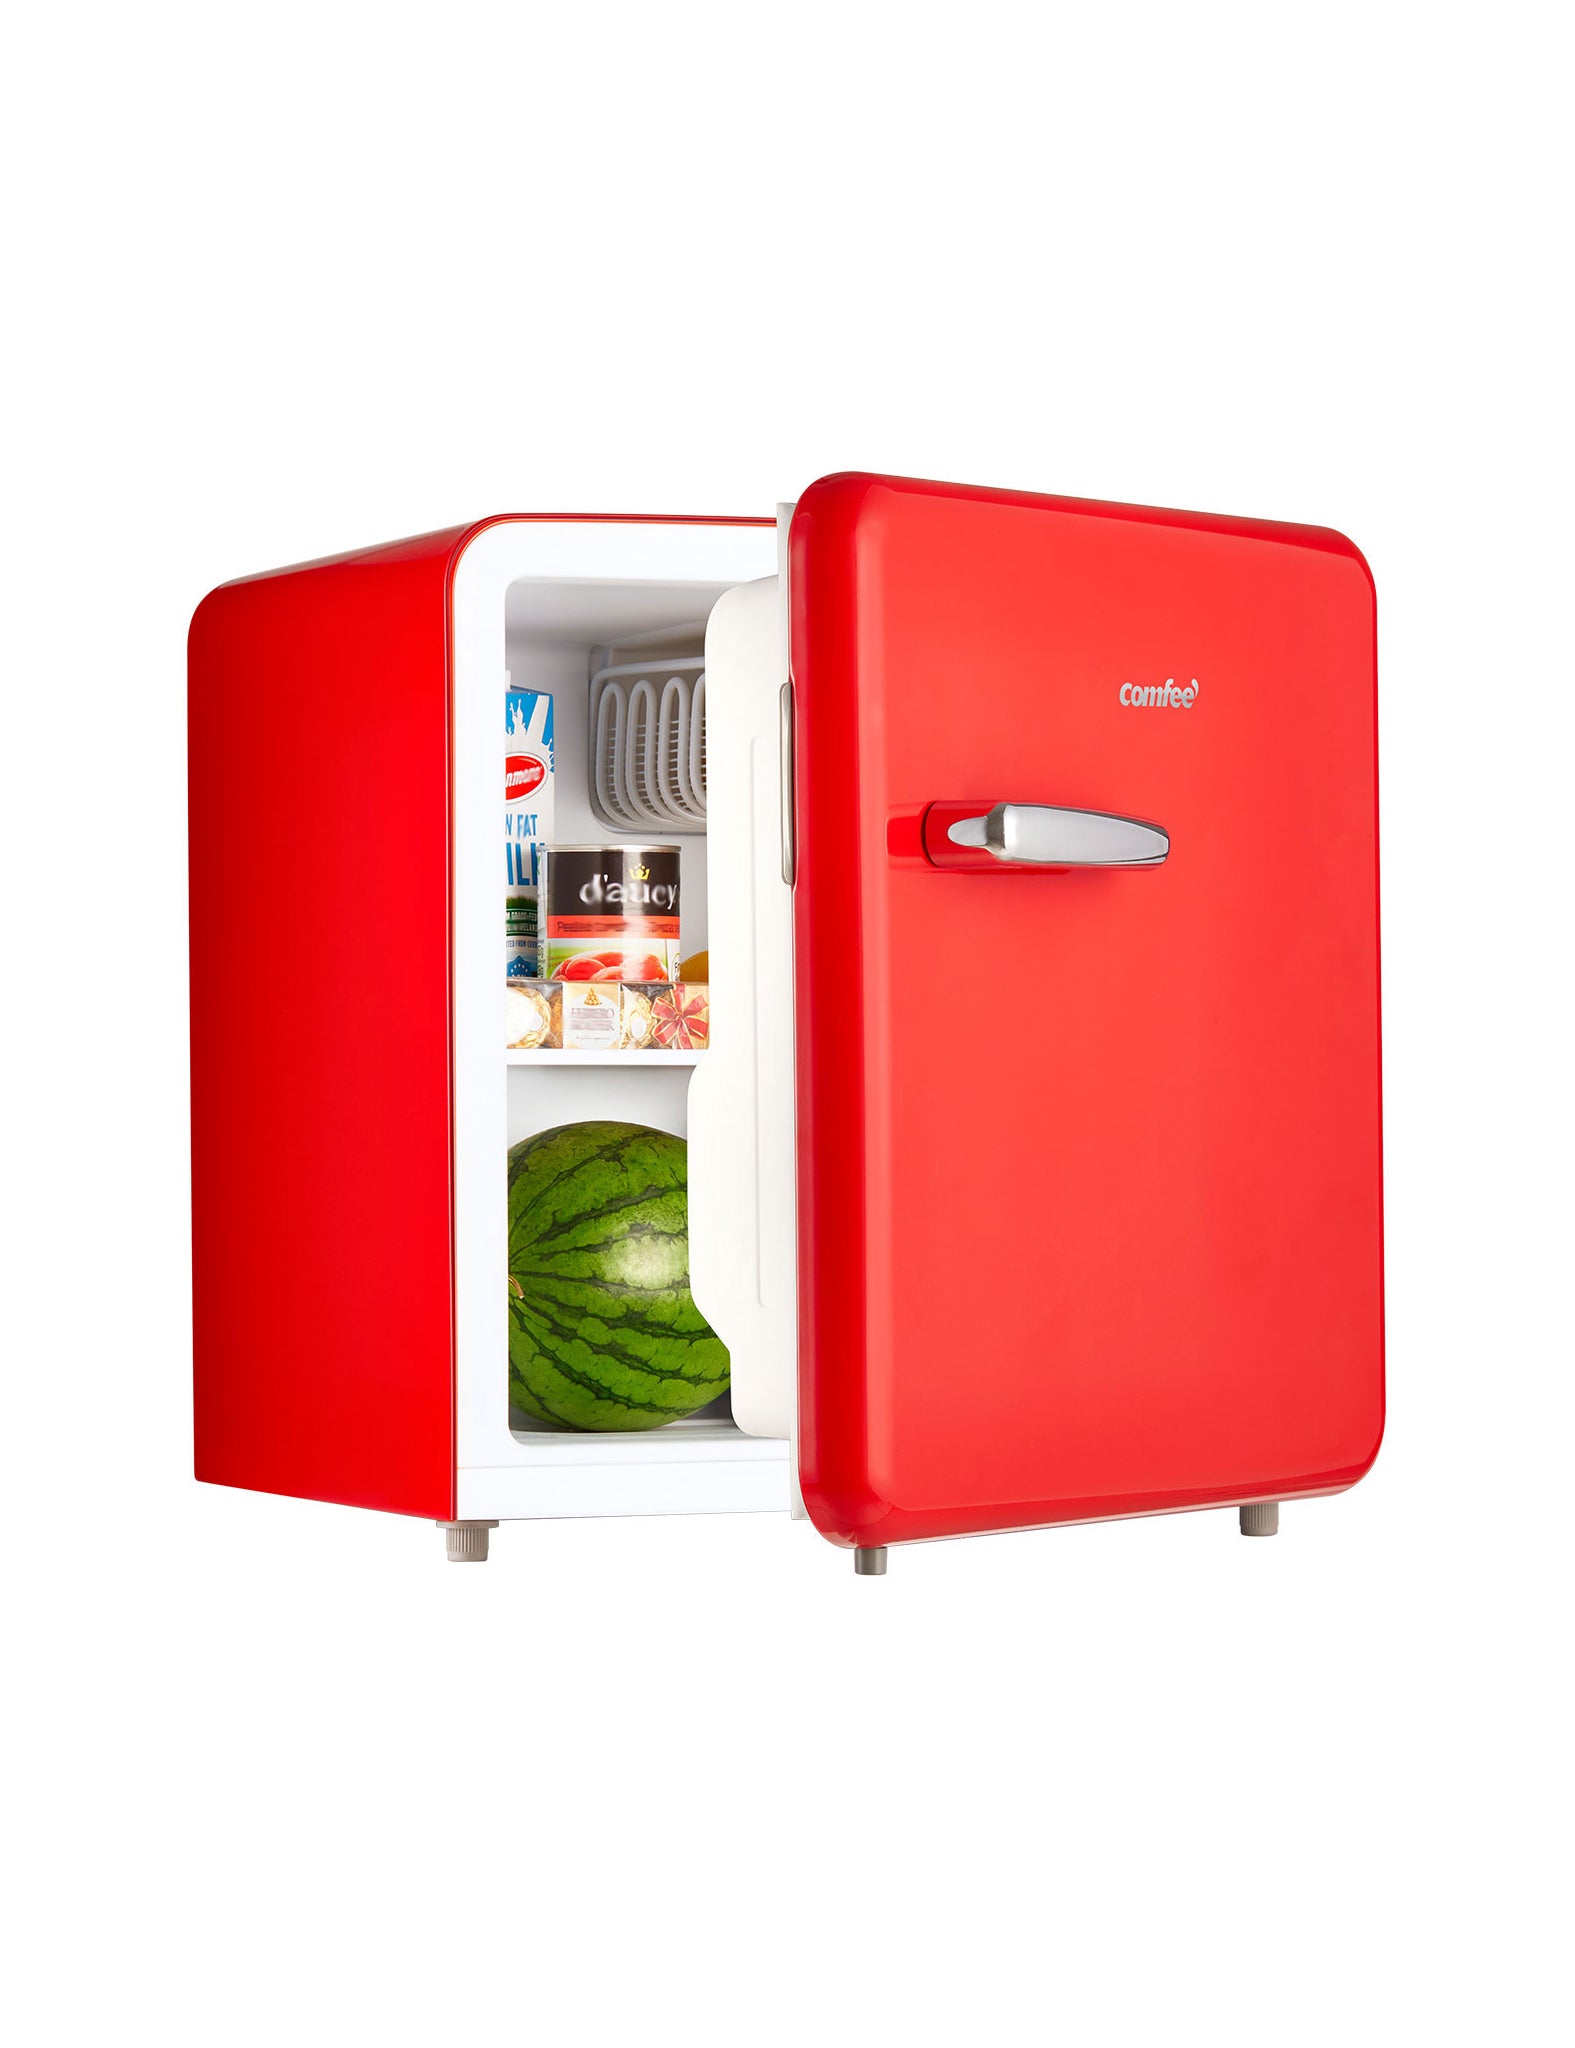 half open retro style comfee mini refrigerator with a watermelon inside